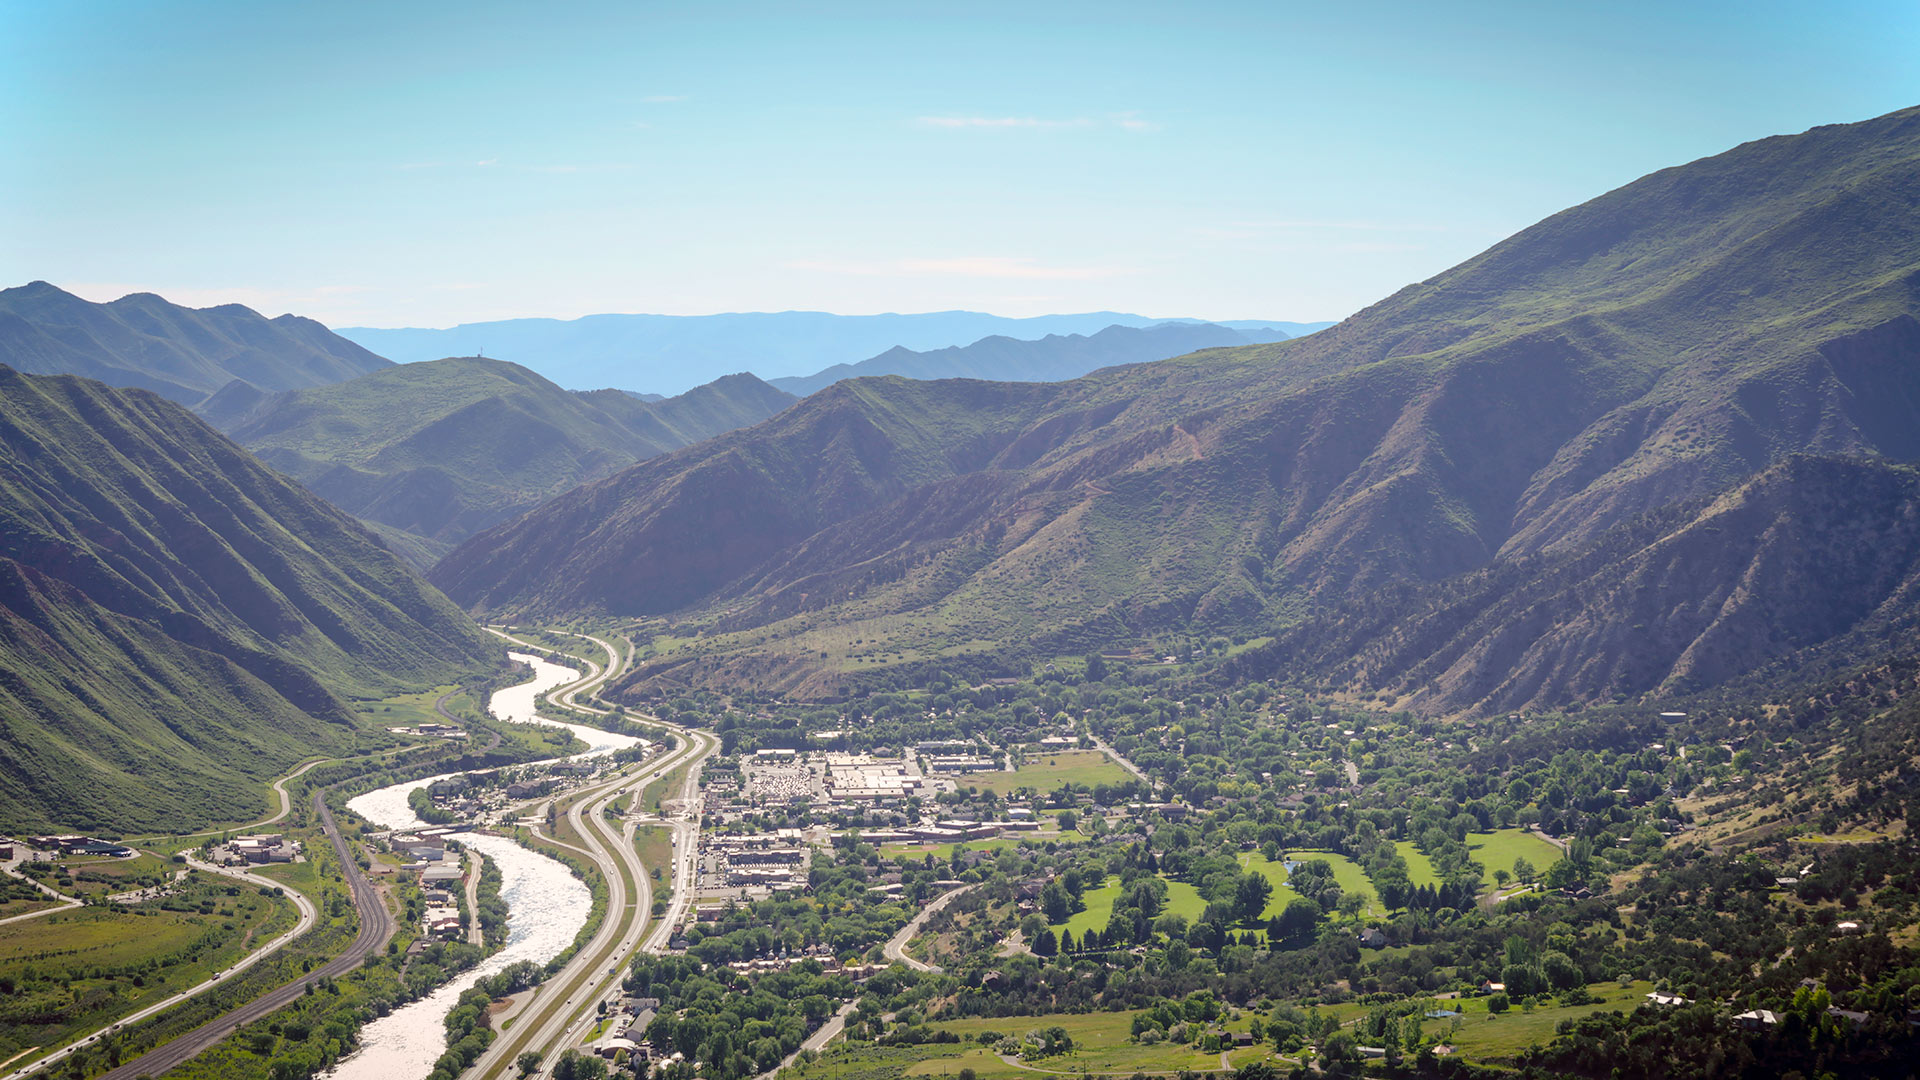 Aerial view of Glenwood Springs